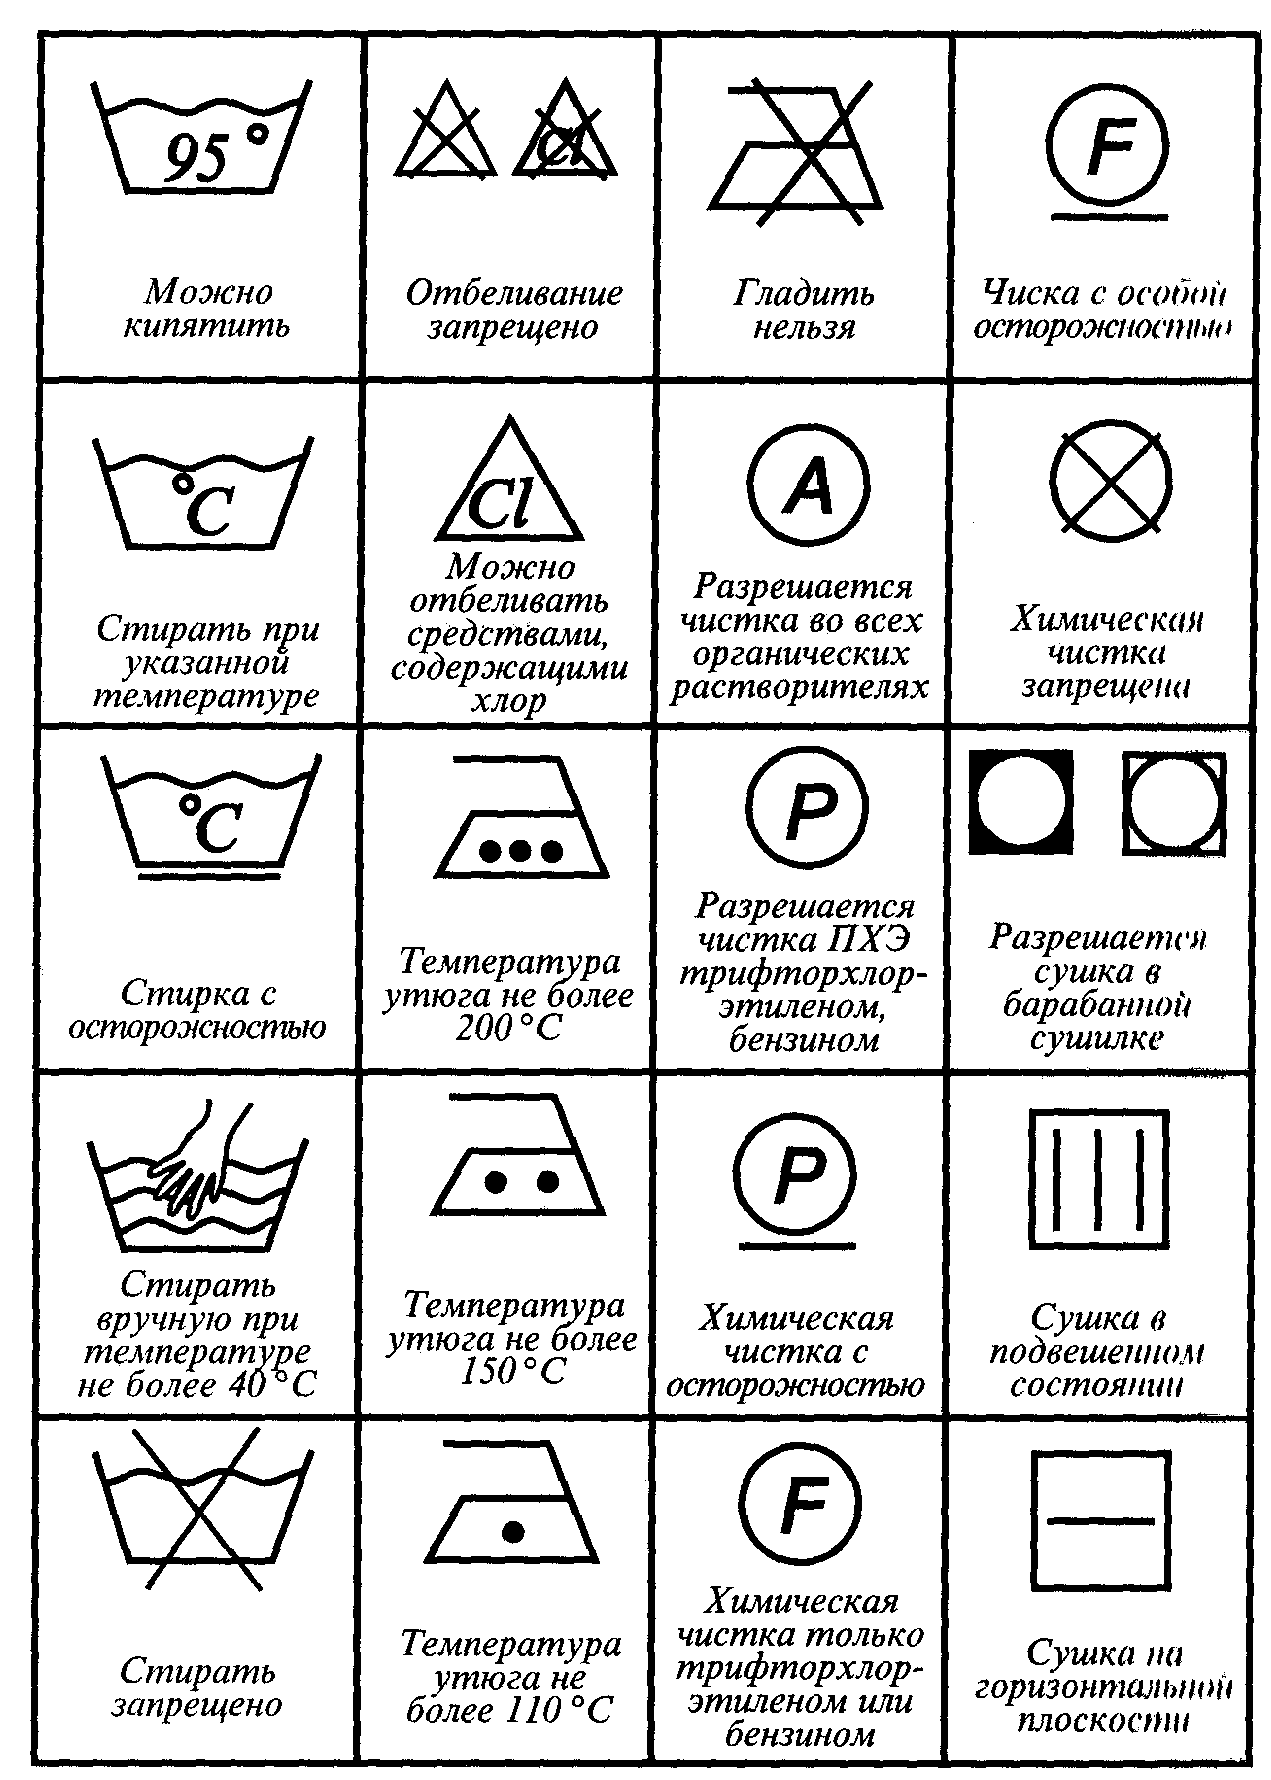 Символы на бирках